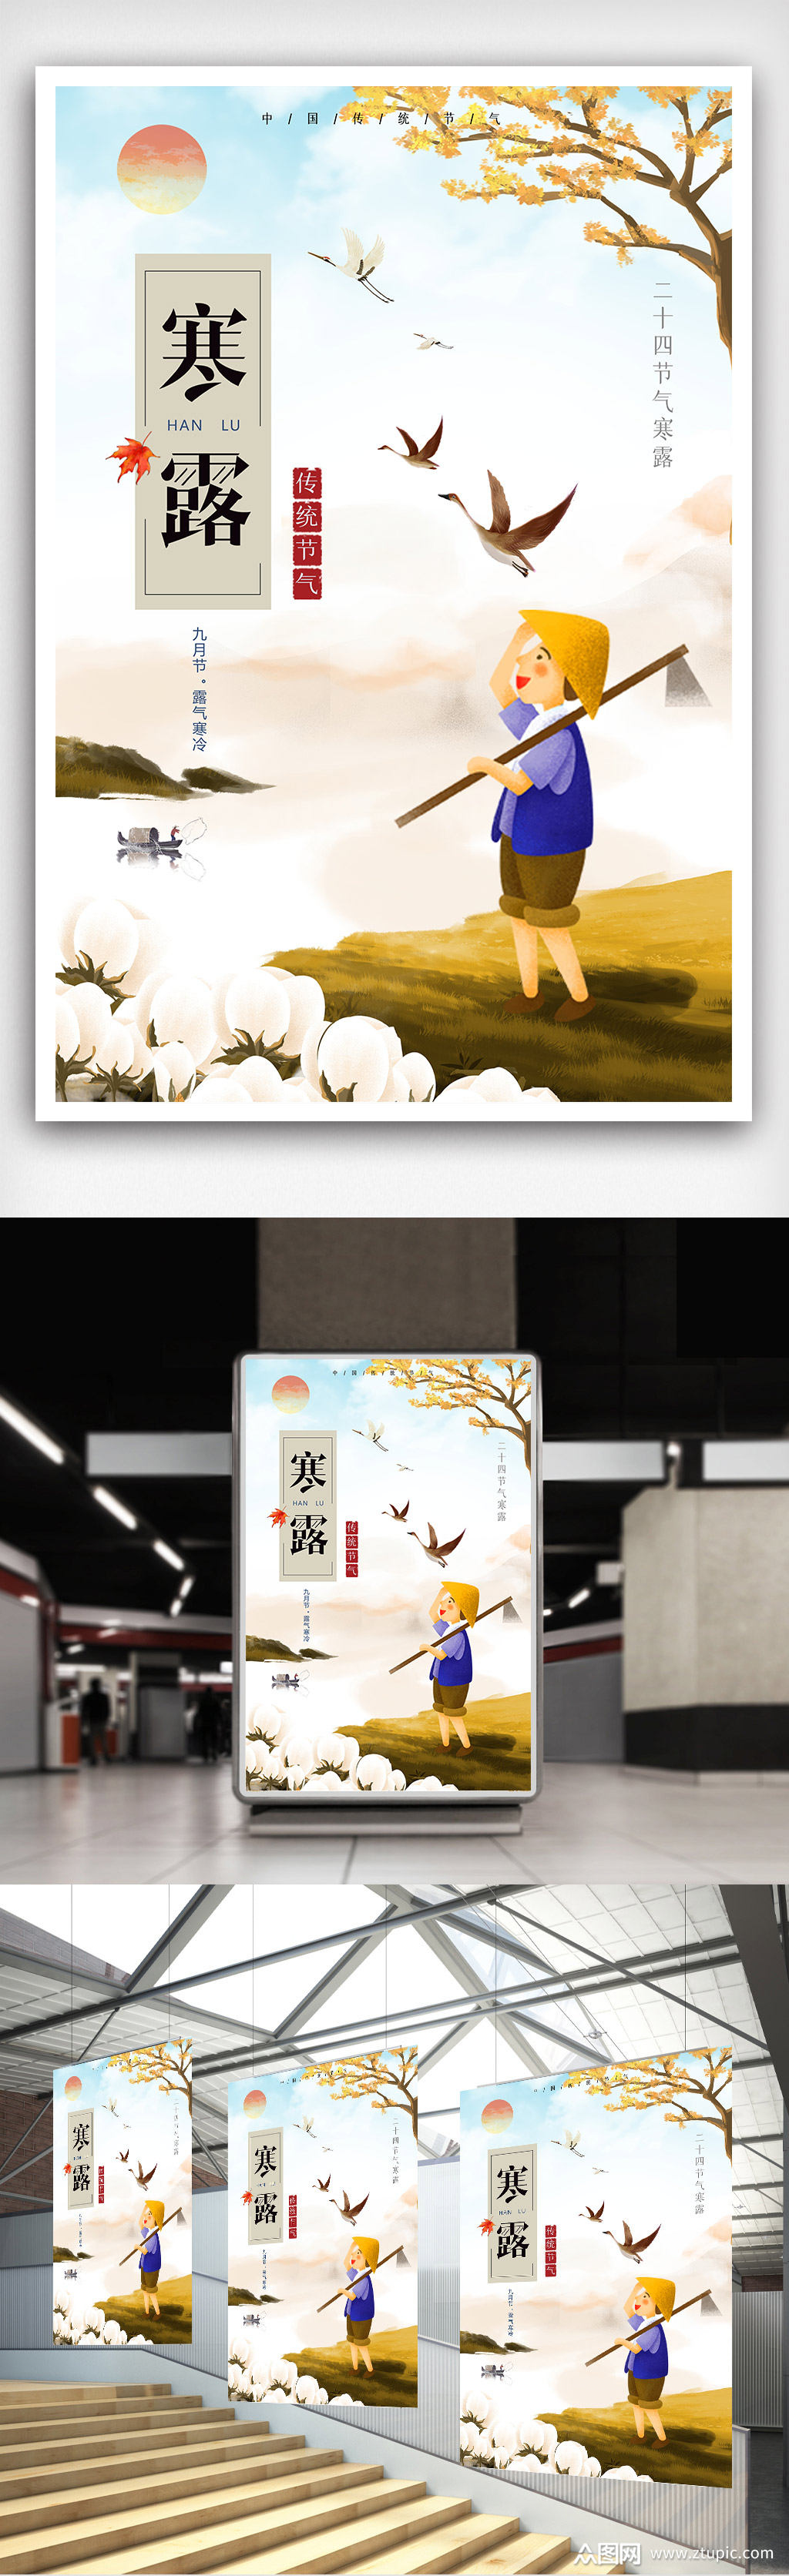 众图网独家提供中国传统节气二十四节气寒露海报素材免费下载,本作品